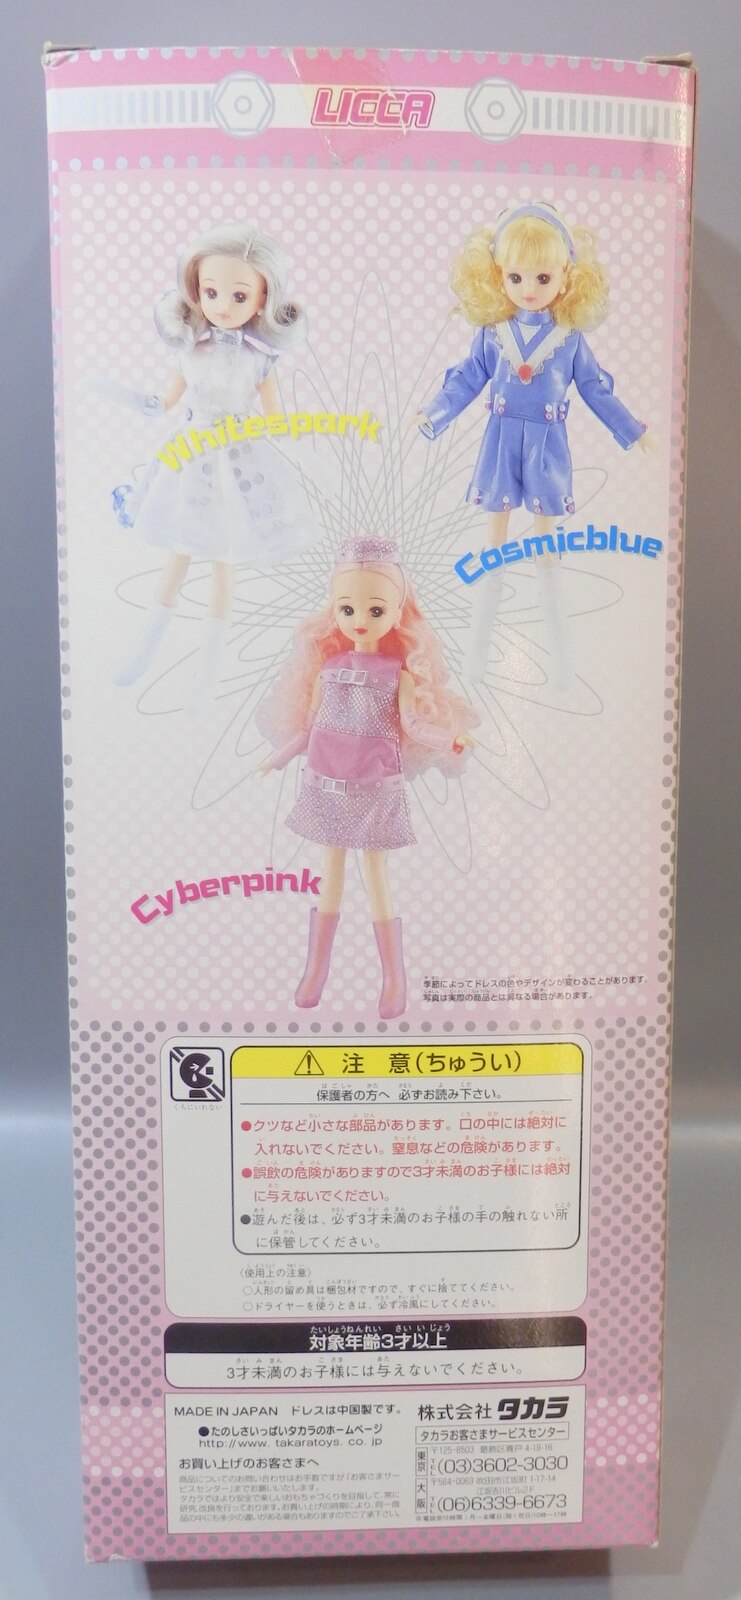 Takara Tomy - リカちゃん人形 ファッションカレンダー2001 ホワイト